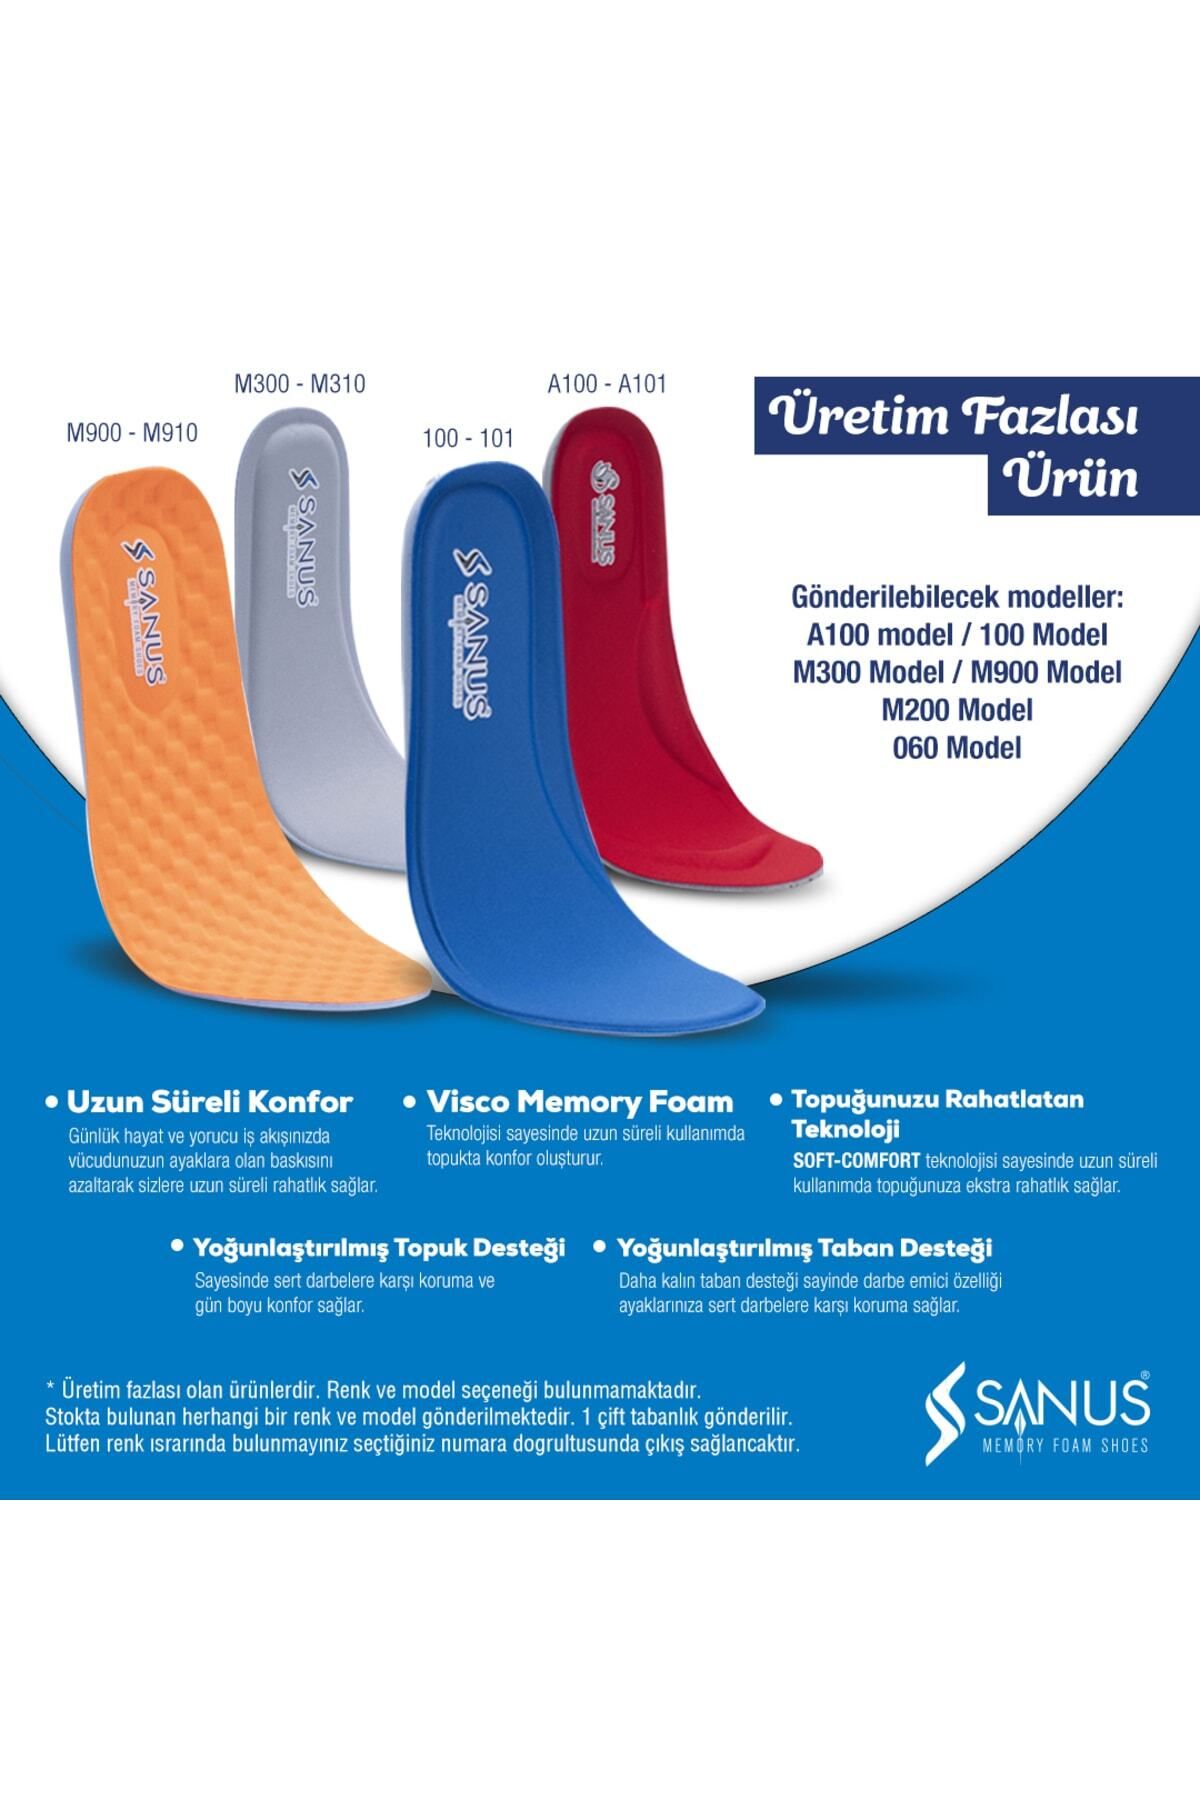 SANUS Memory Foam Tabanlık Karısık Model Ve Renk 2.kalite Üretim Fazlası